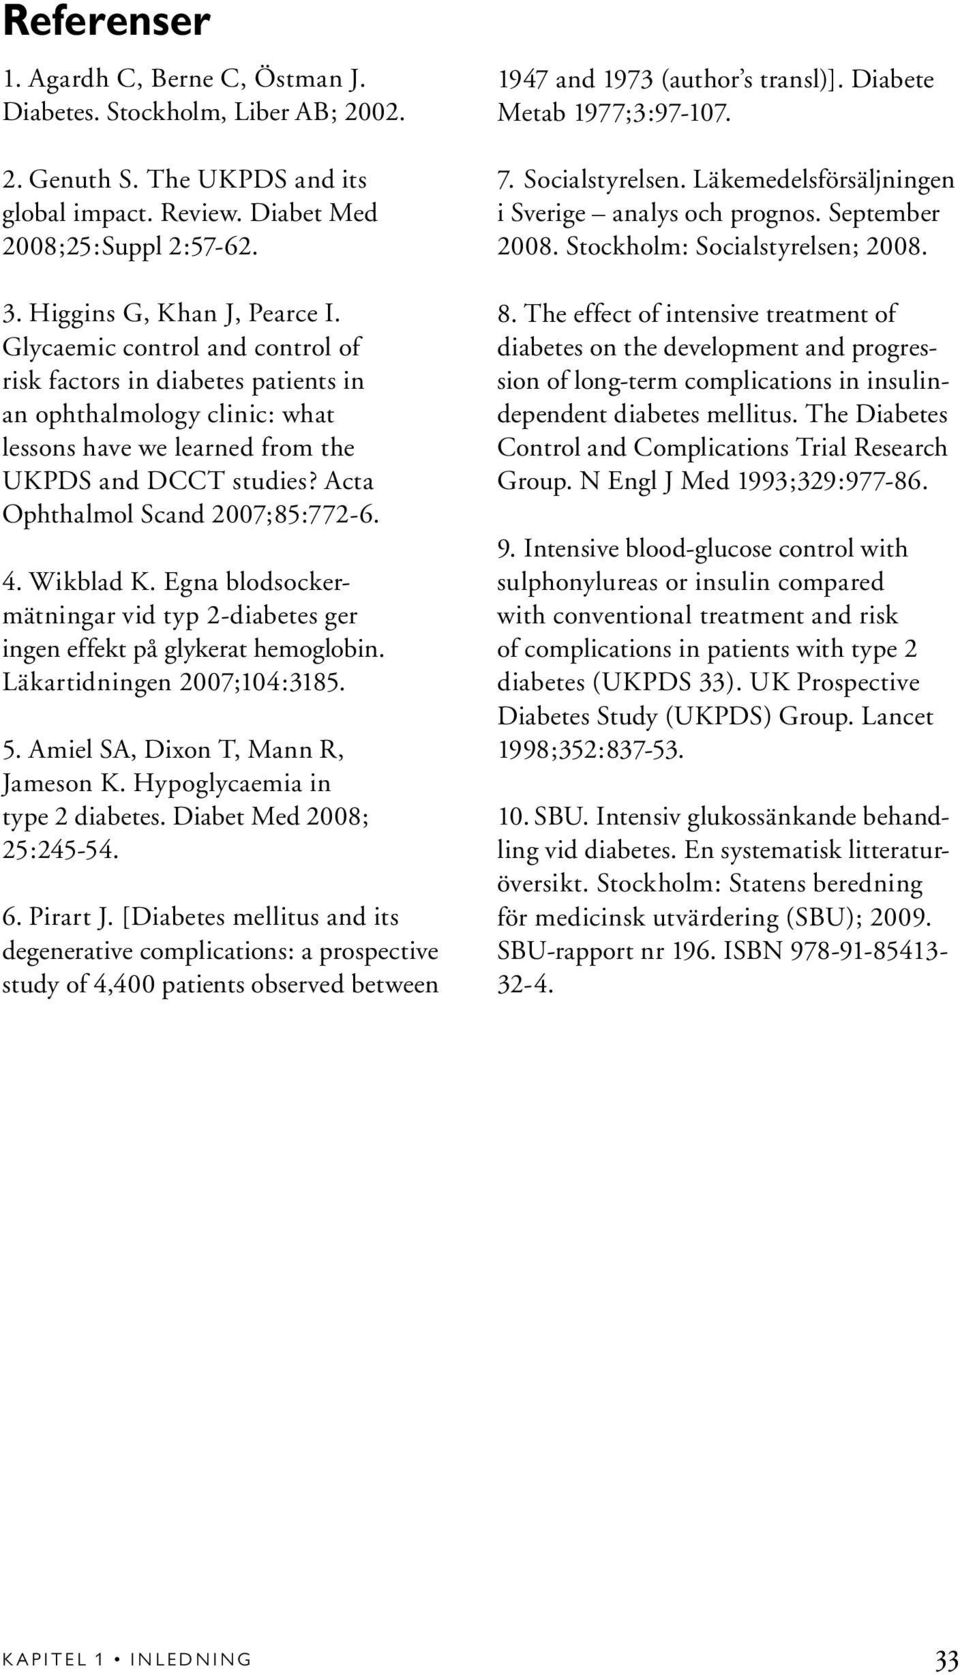 Wikblad K. Egna blodsockermätningar vid typ 2-diabetes ger ingen effekt på glykerat hemoglobin. Läkartidningen 2007;104:3185. 5. Amiel SA, Dixon T, Mann R, Jameson K. Hypoglycaemia in type 2 diabetes.